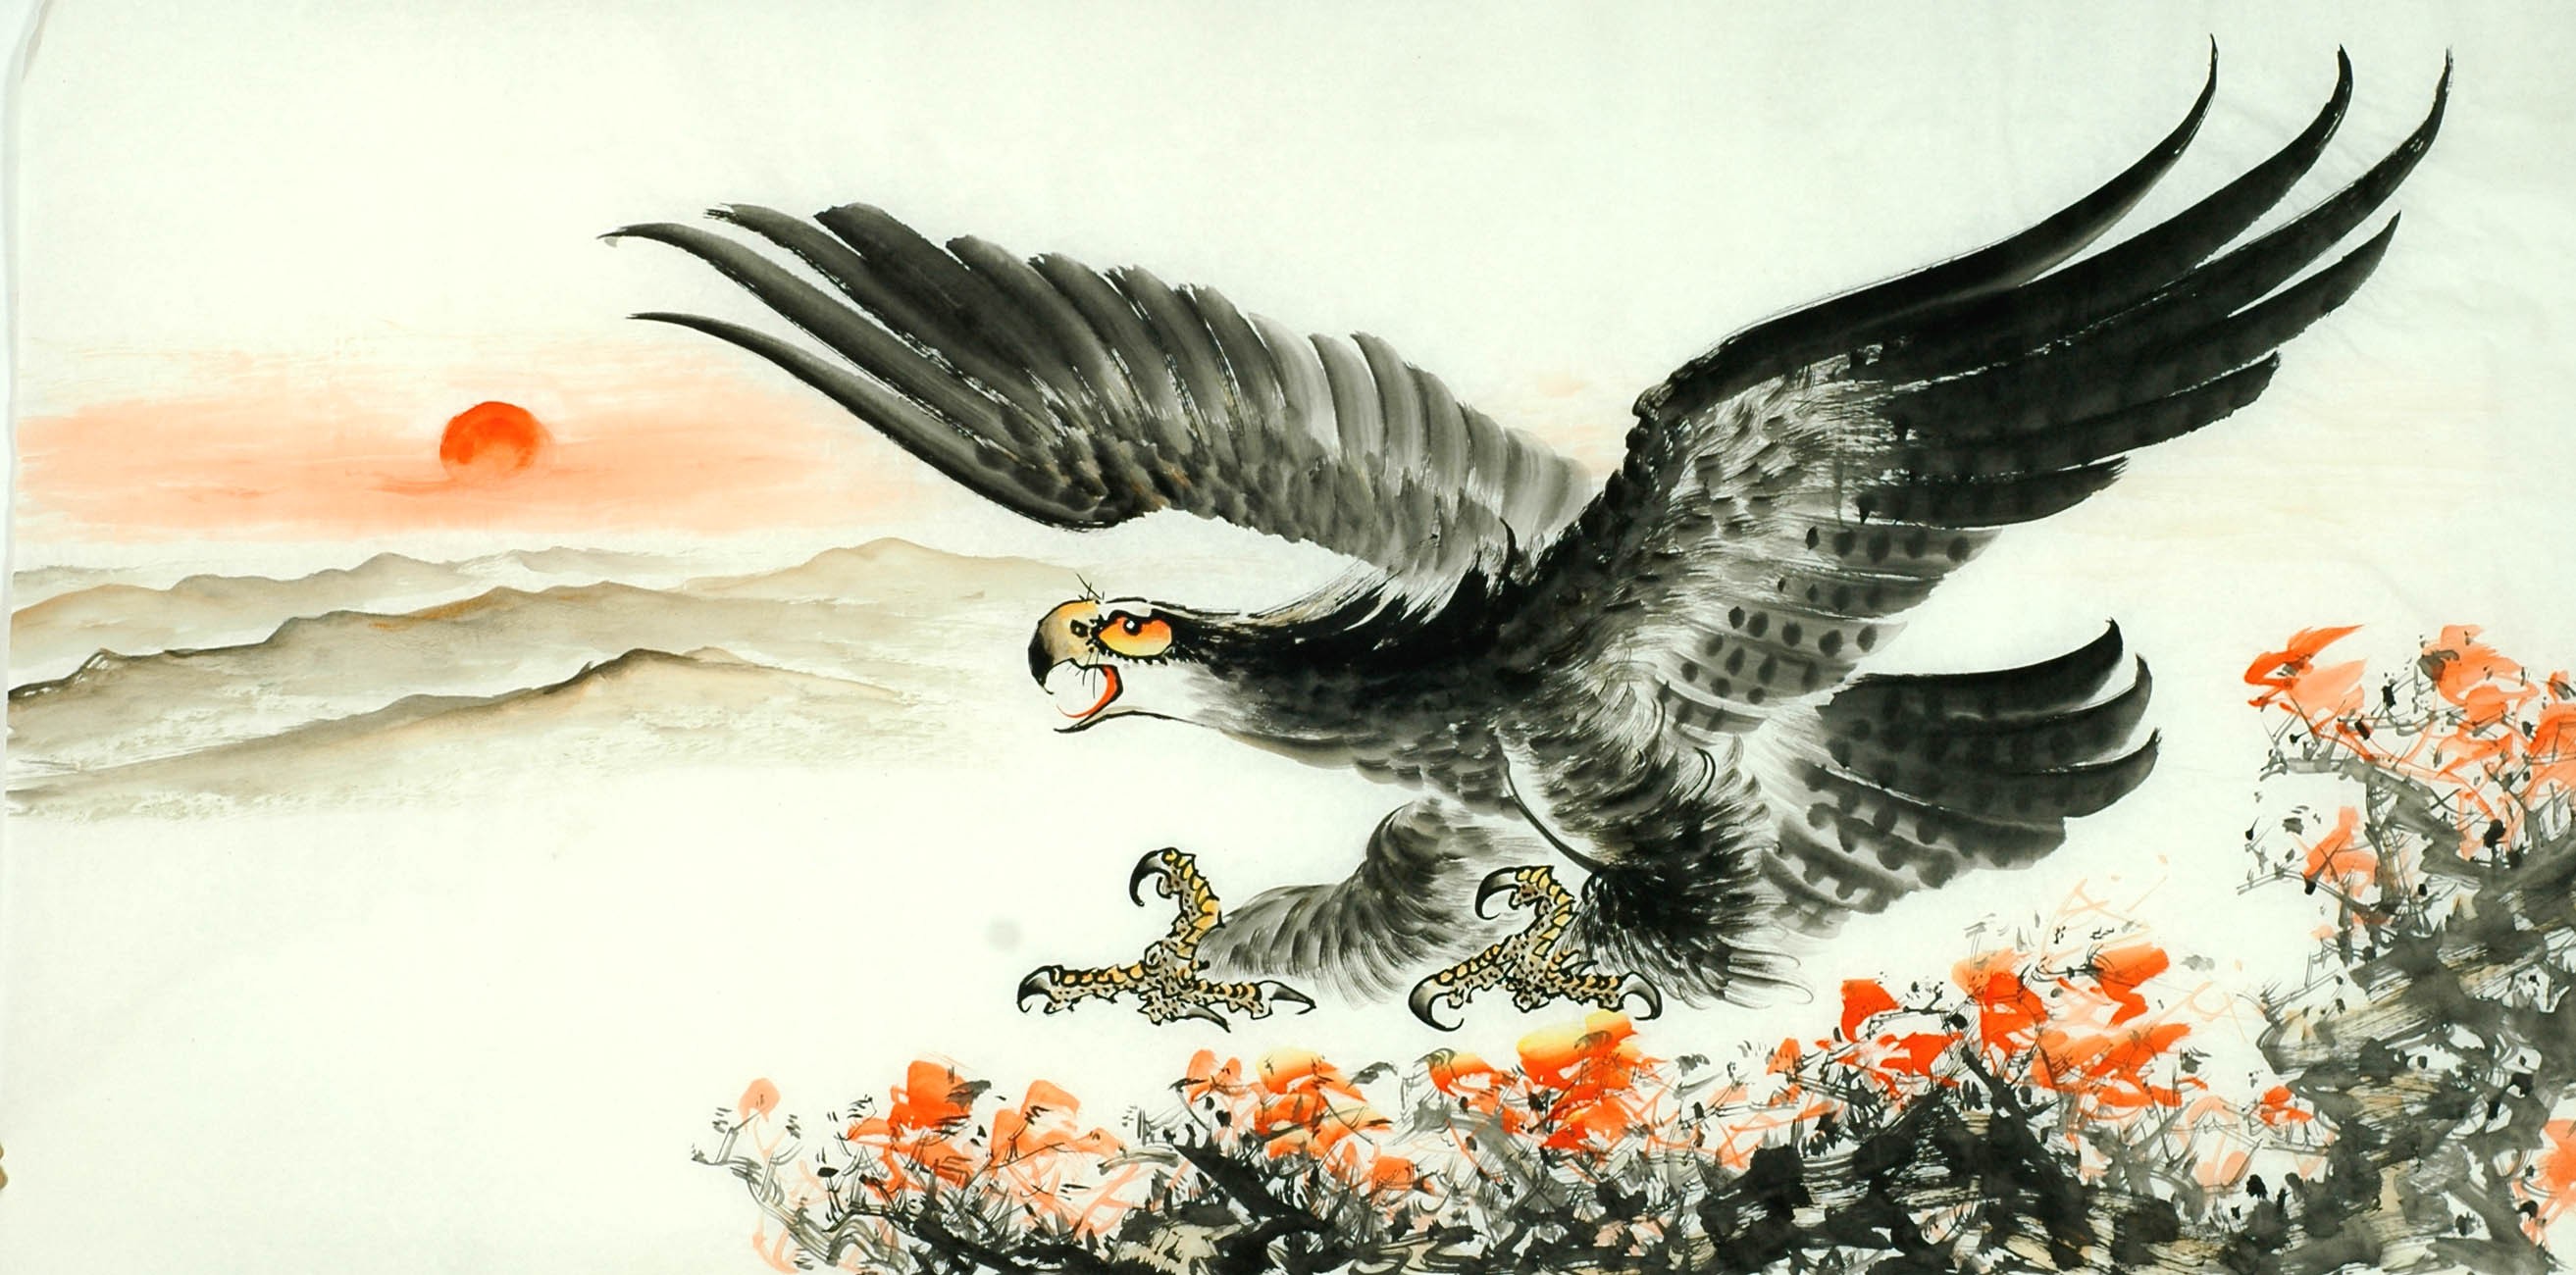 Chinese Eagle Painting - CNAG011309